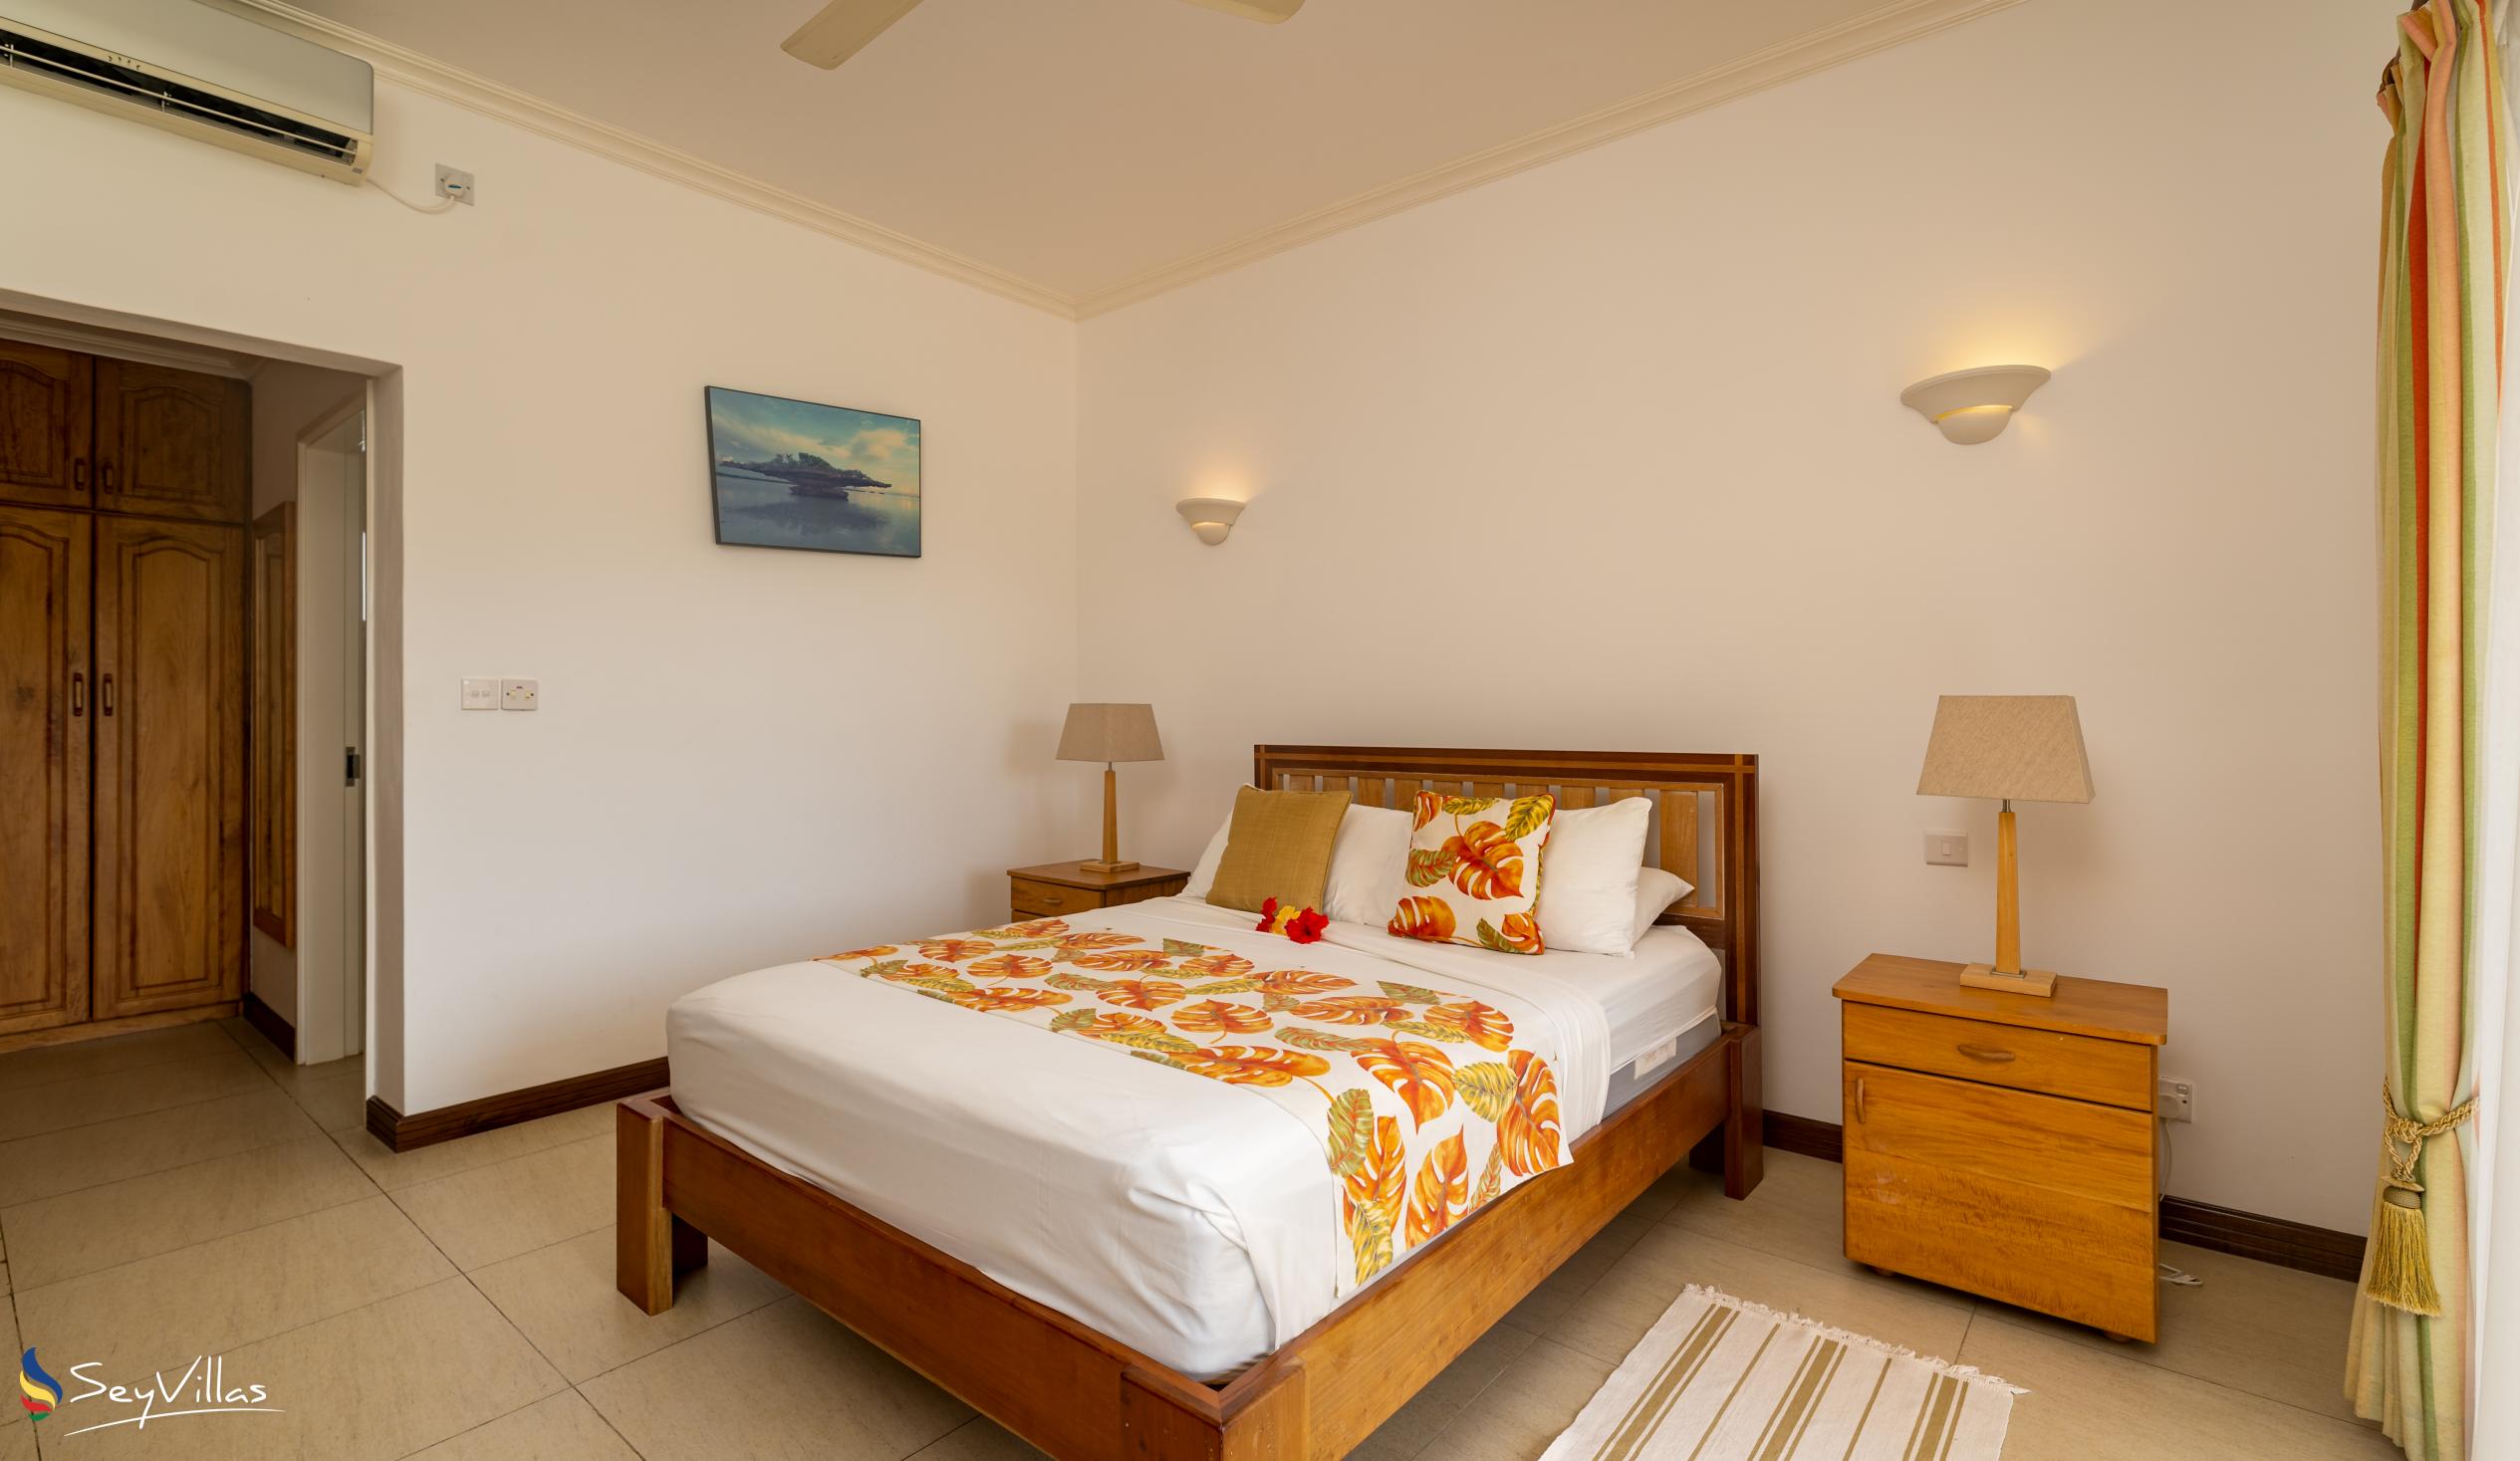 Photo 60: Marie-Laure Suites - Double Room - Mahé (Seychelles)